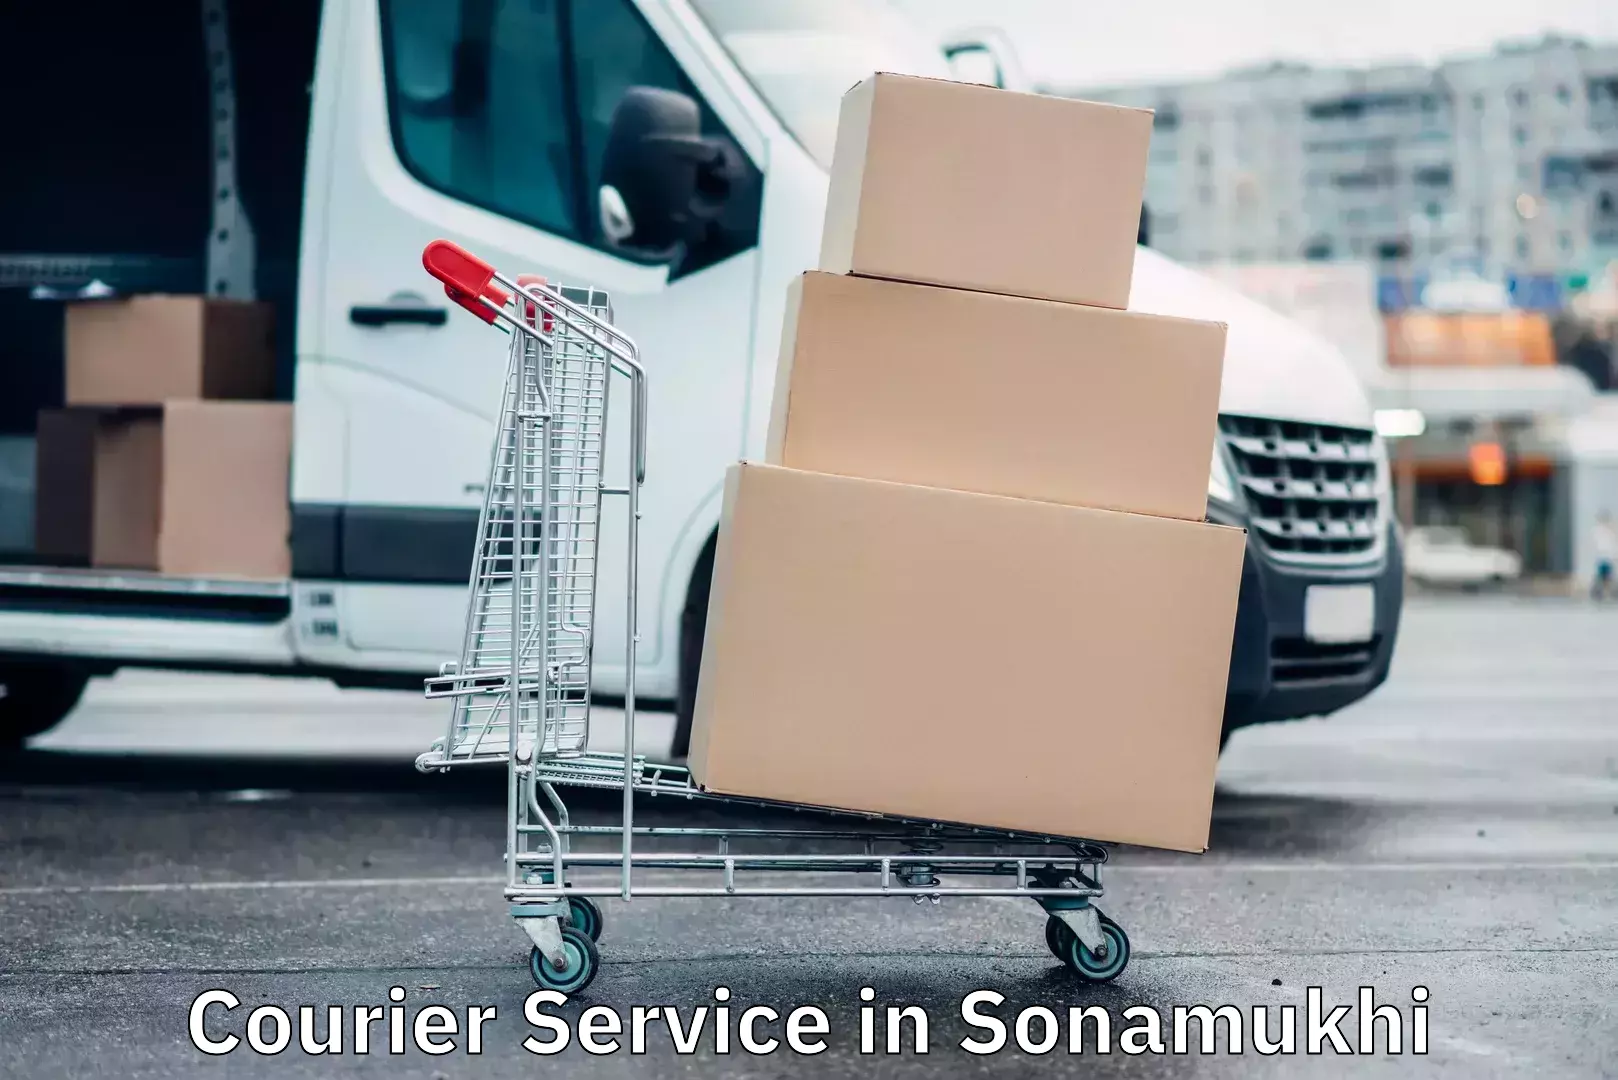 User-friendly courier app in Sonamukhi